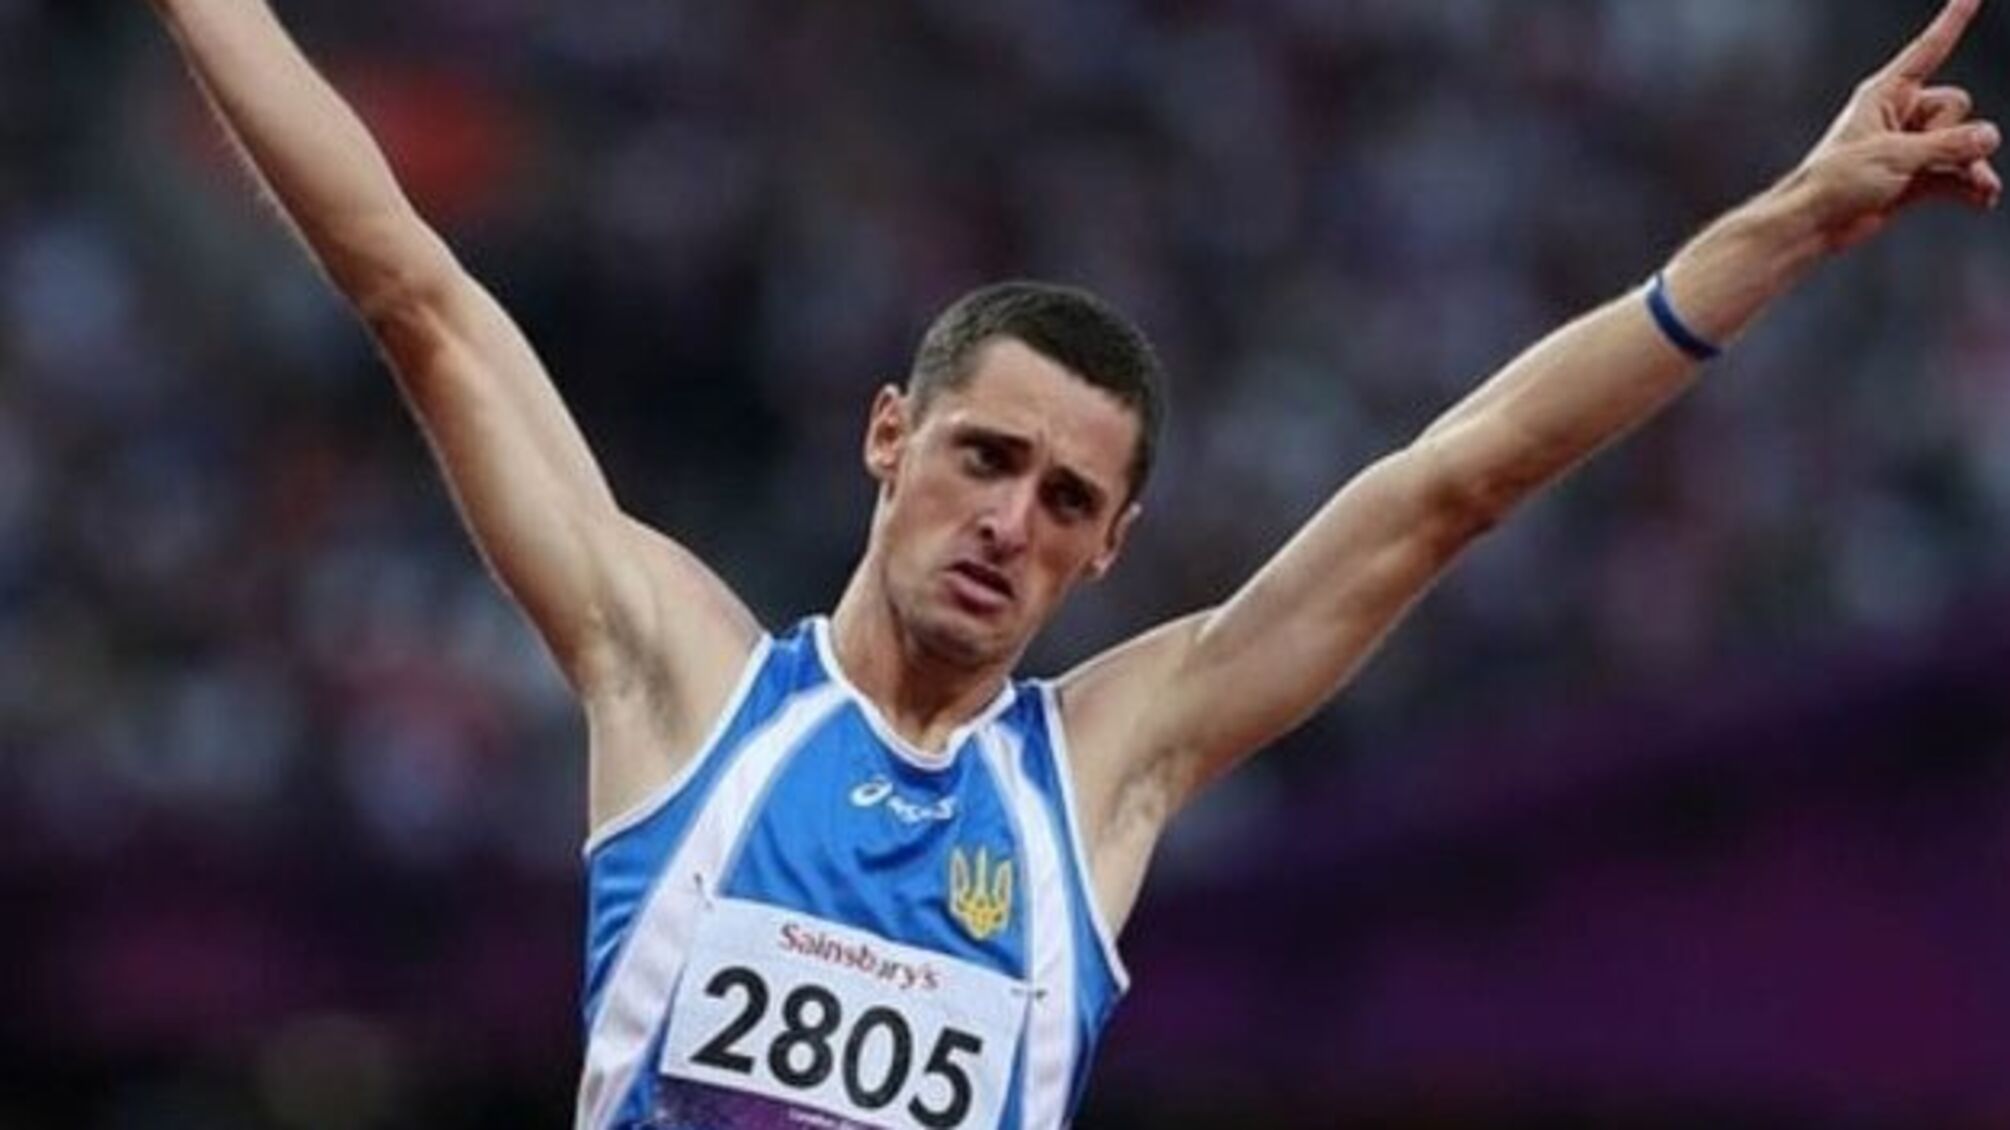 Українець Павлик виграв «бронзу» Паралімпіади-2020 в стрибках у довжину